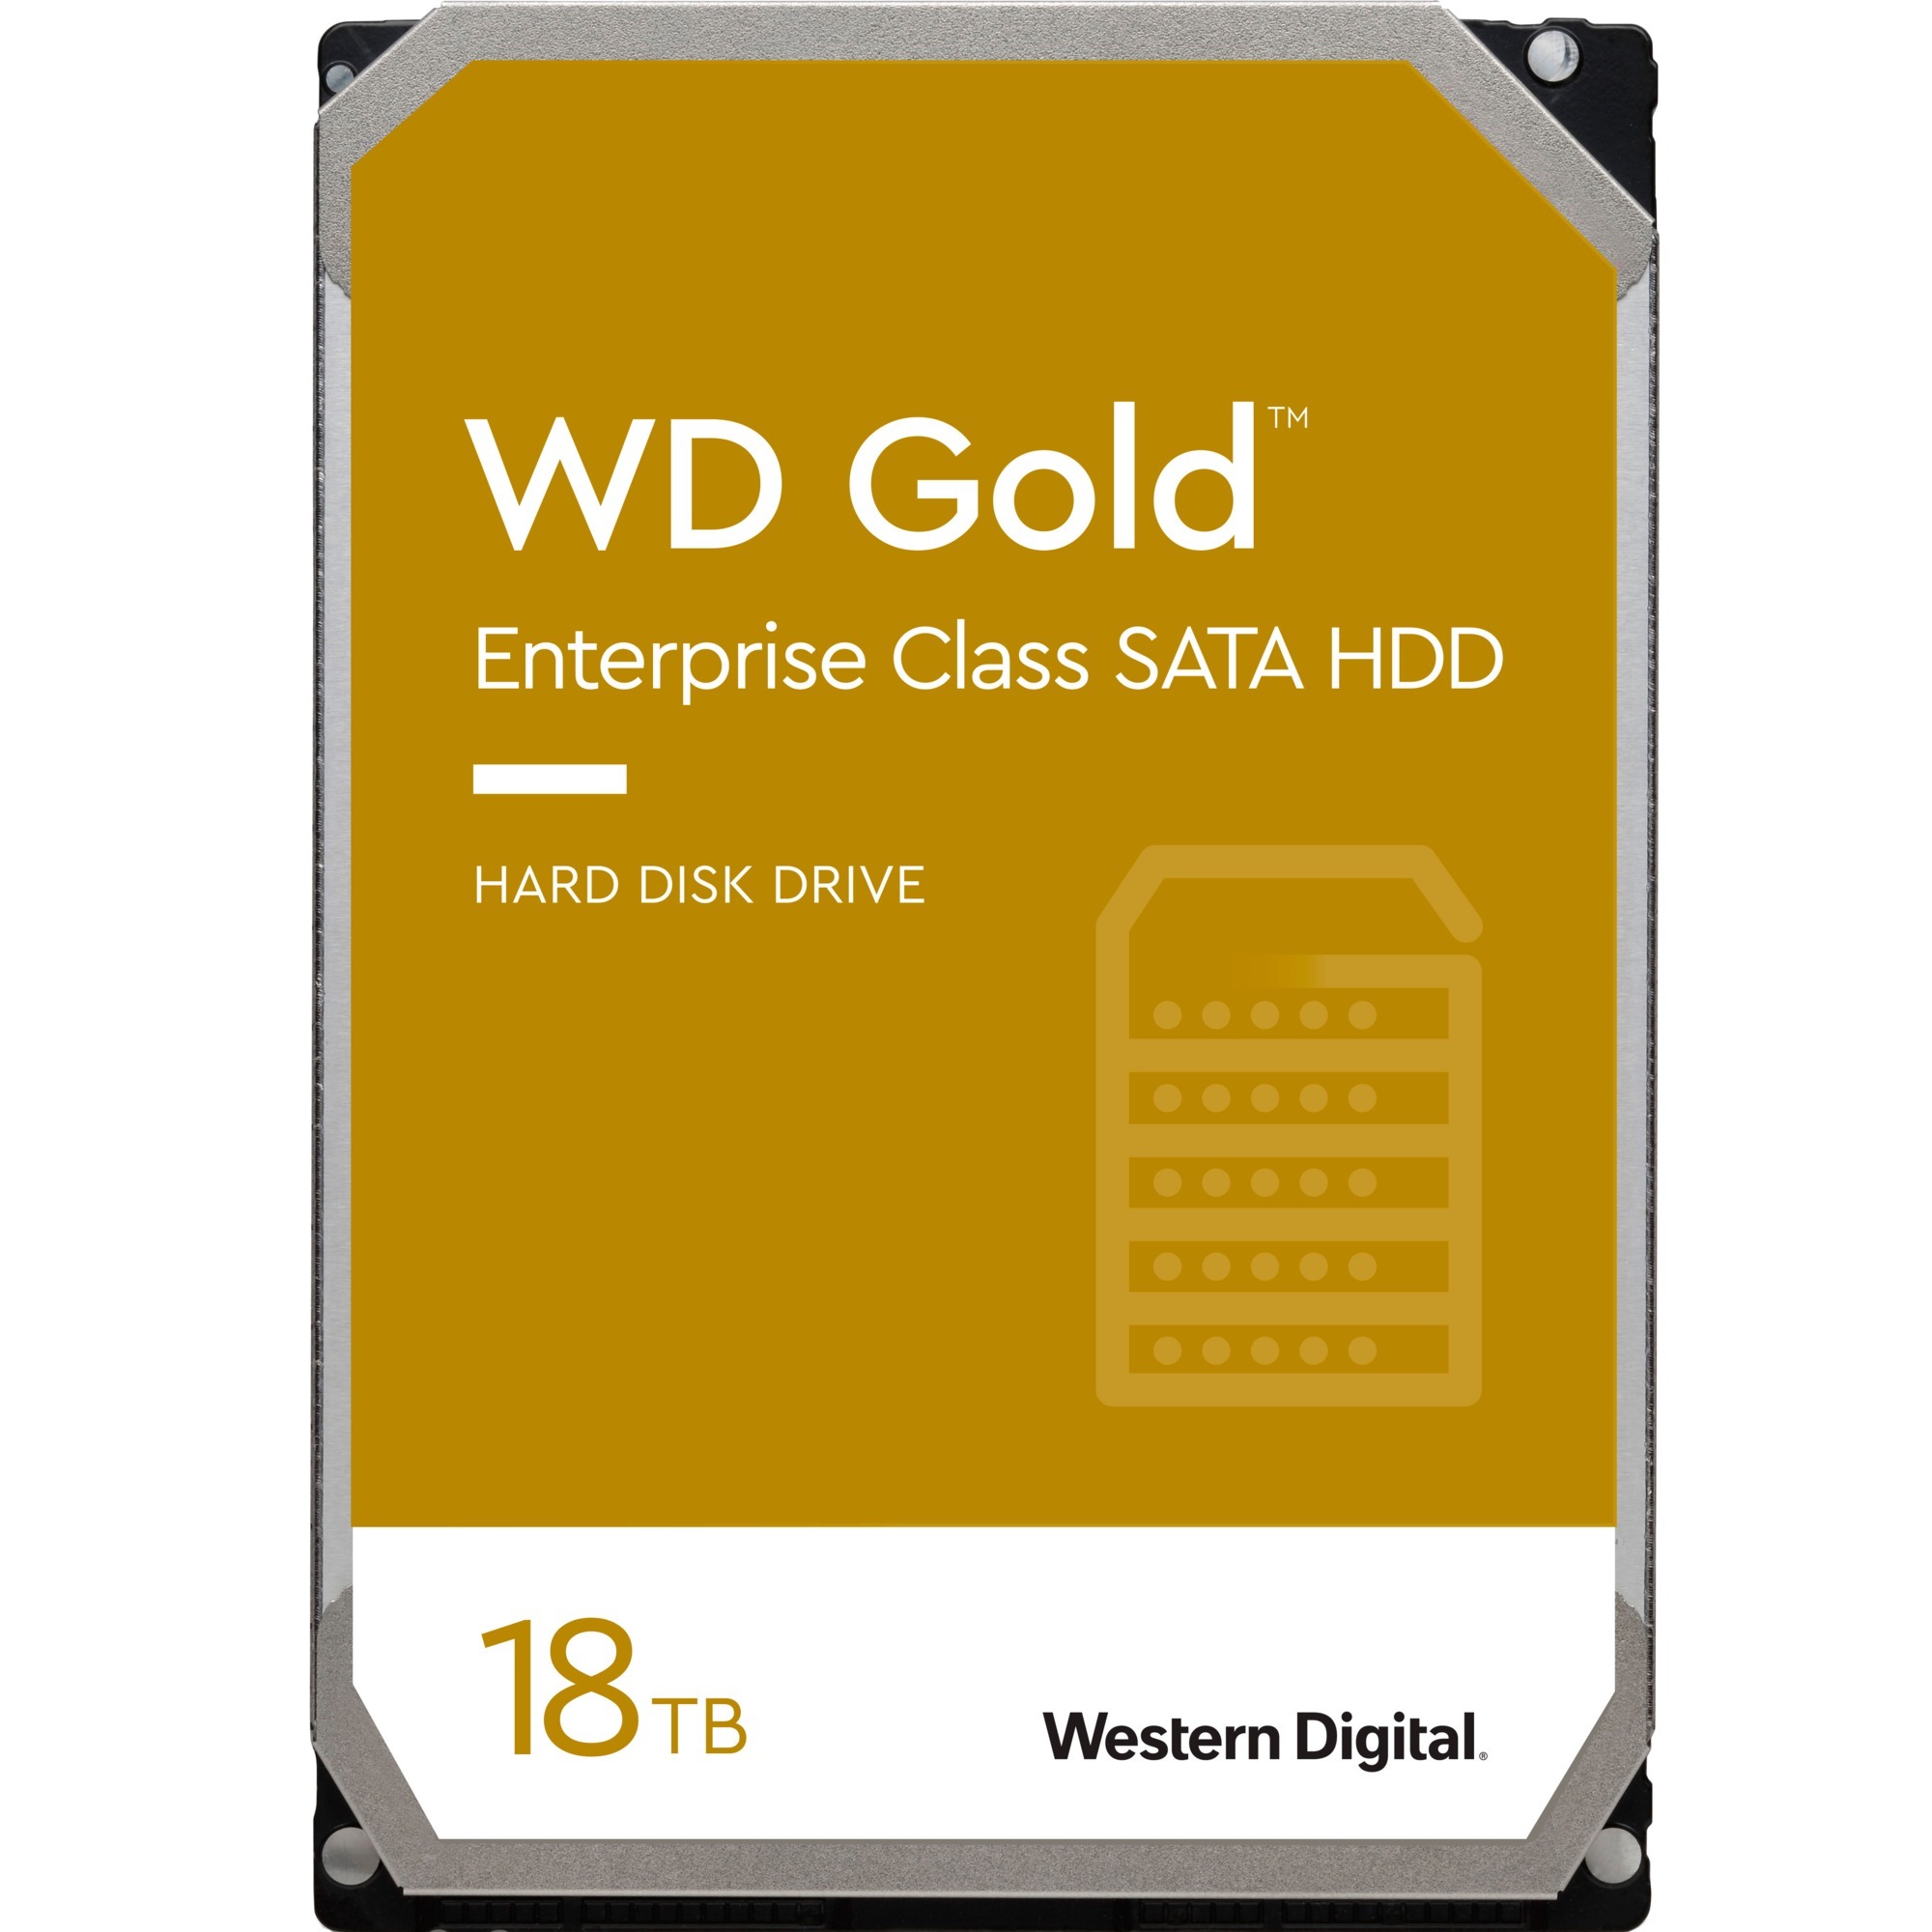 Image of Alternate - Gold Enterprise Class 18 TB, Festplatte online einkaufen bei Alternate